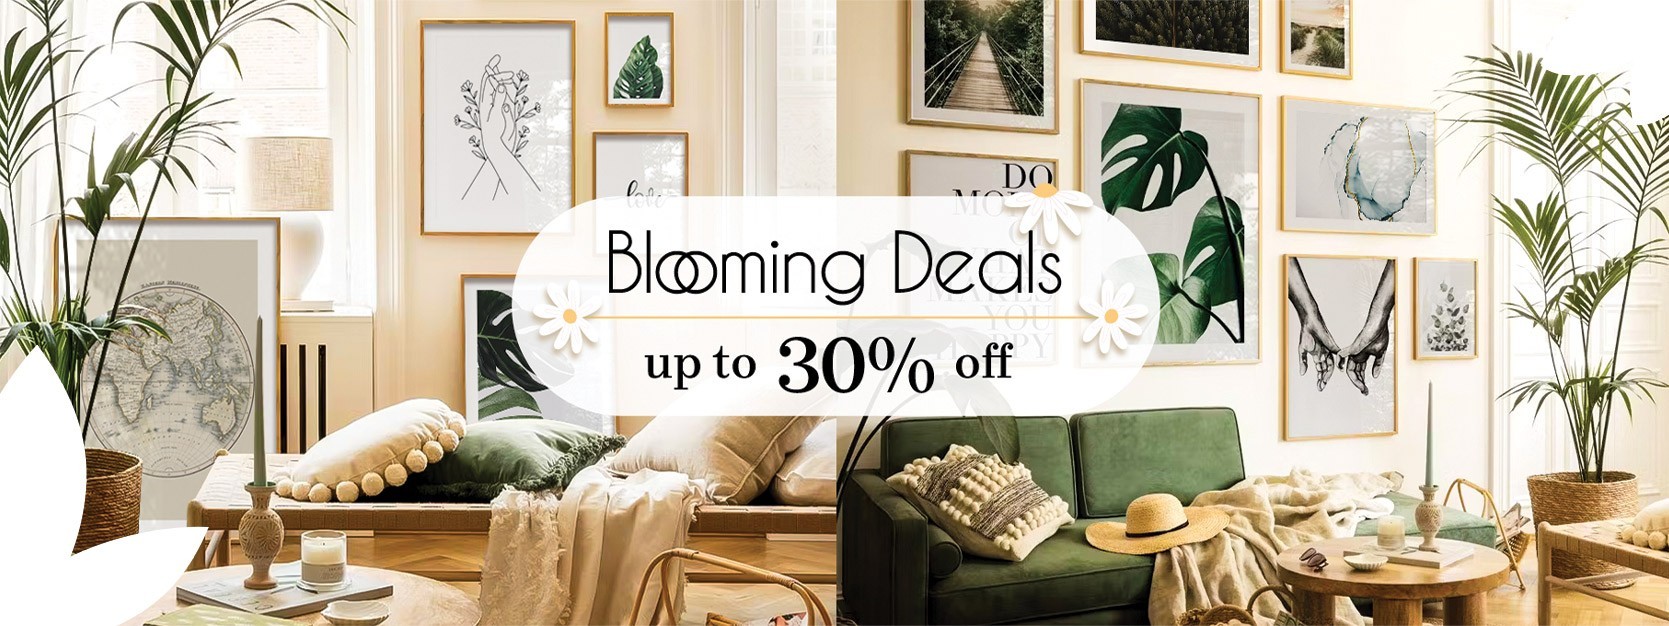 Blooming Deals